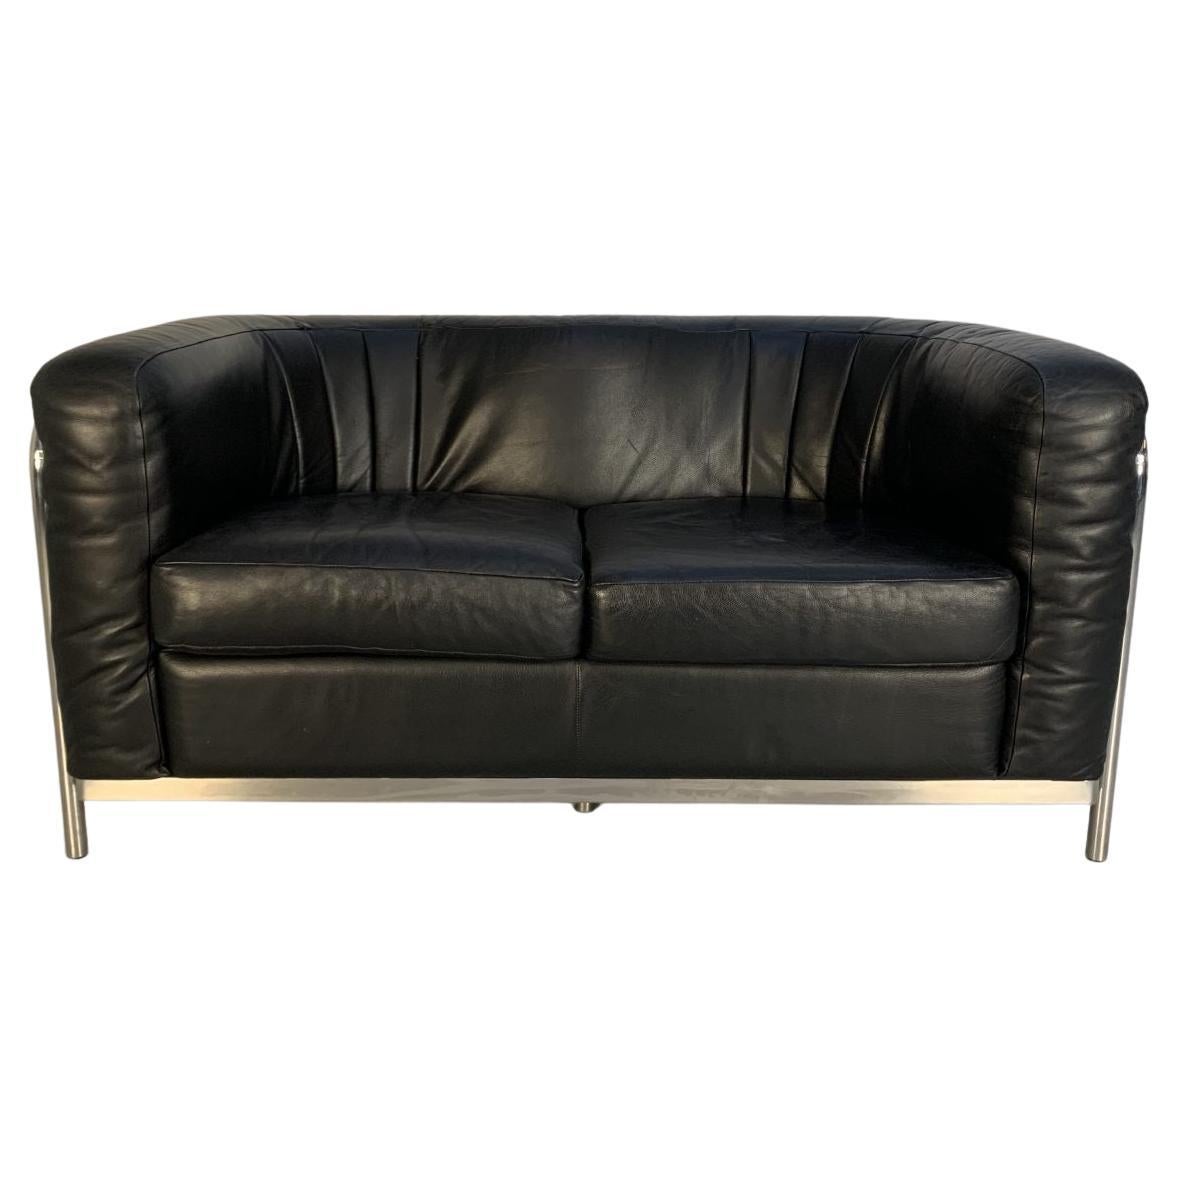 Zanotta Onda Sofa - 2-Sitzer - in schwarzem Scozia Leder und Chrom